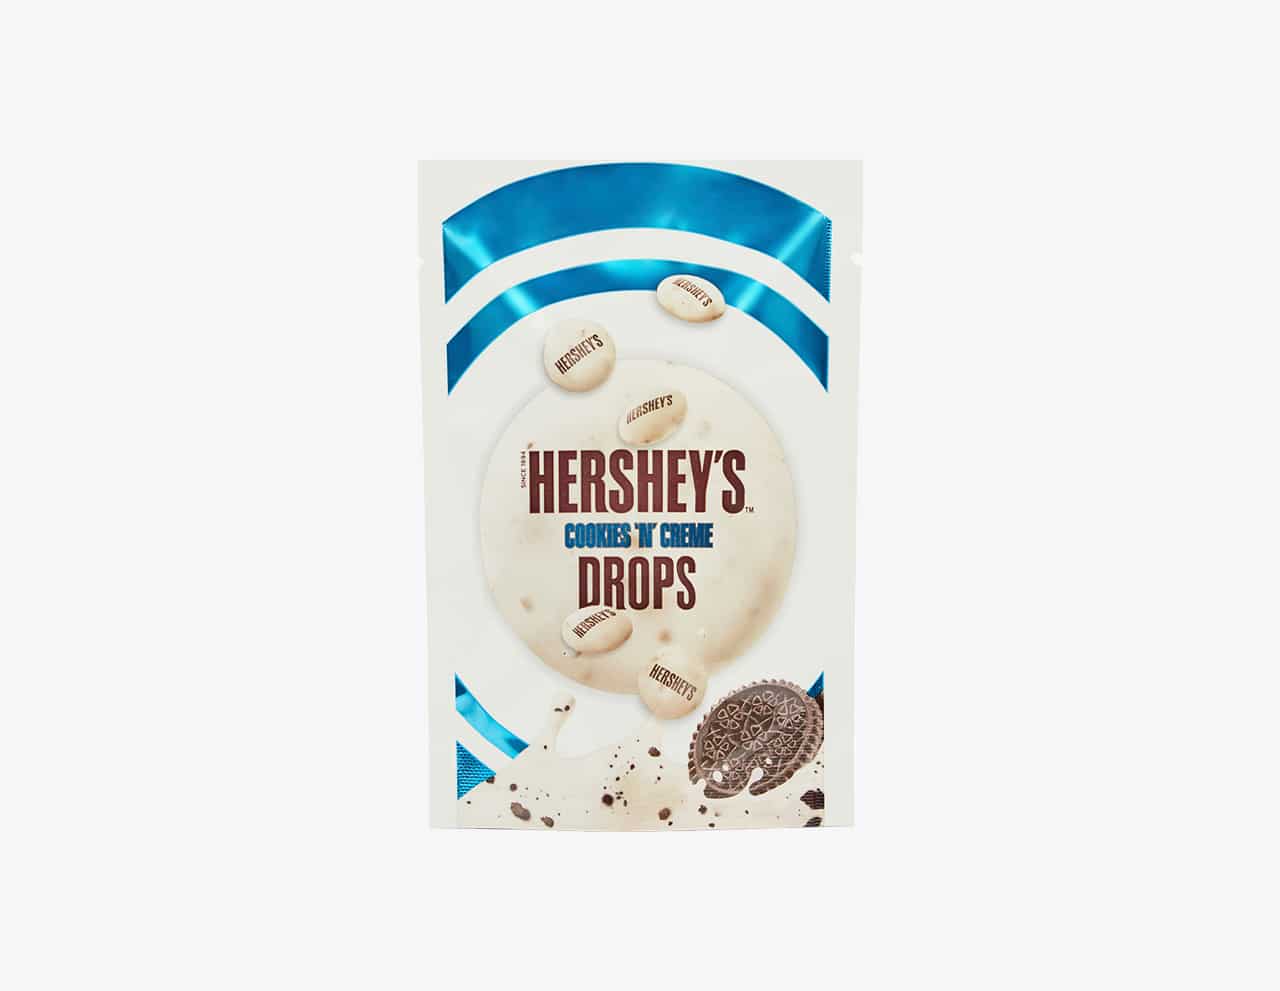 Hershey's Drops packaging